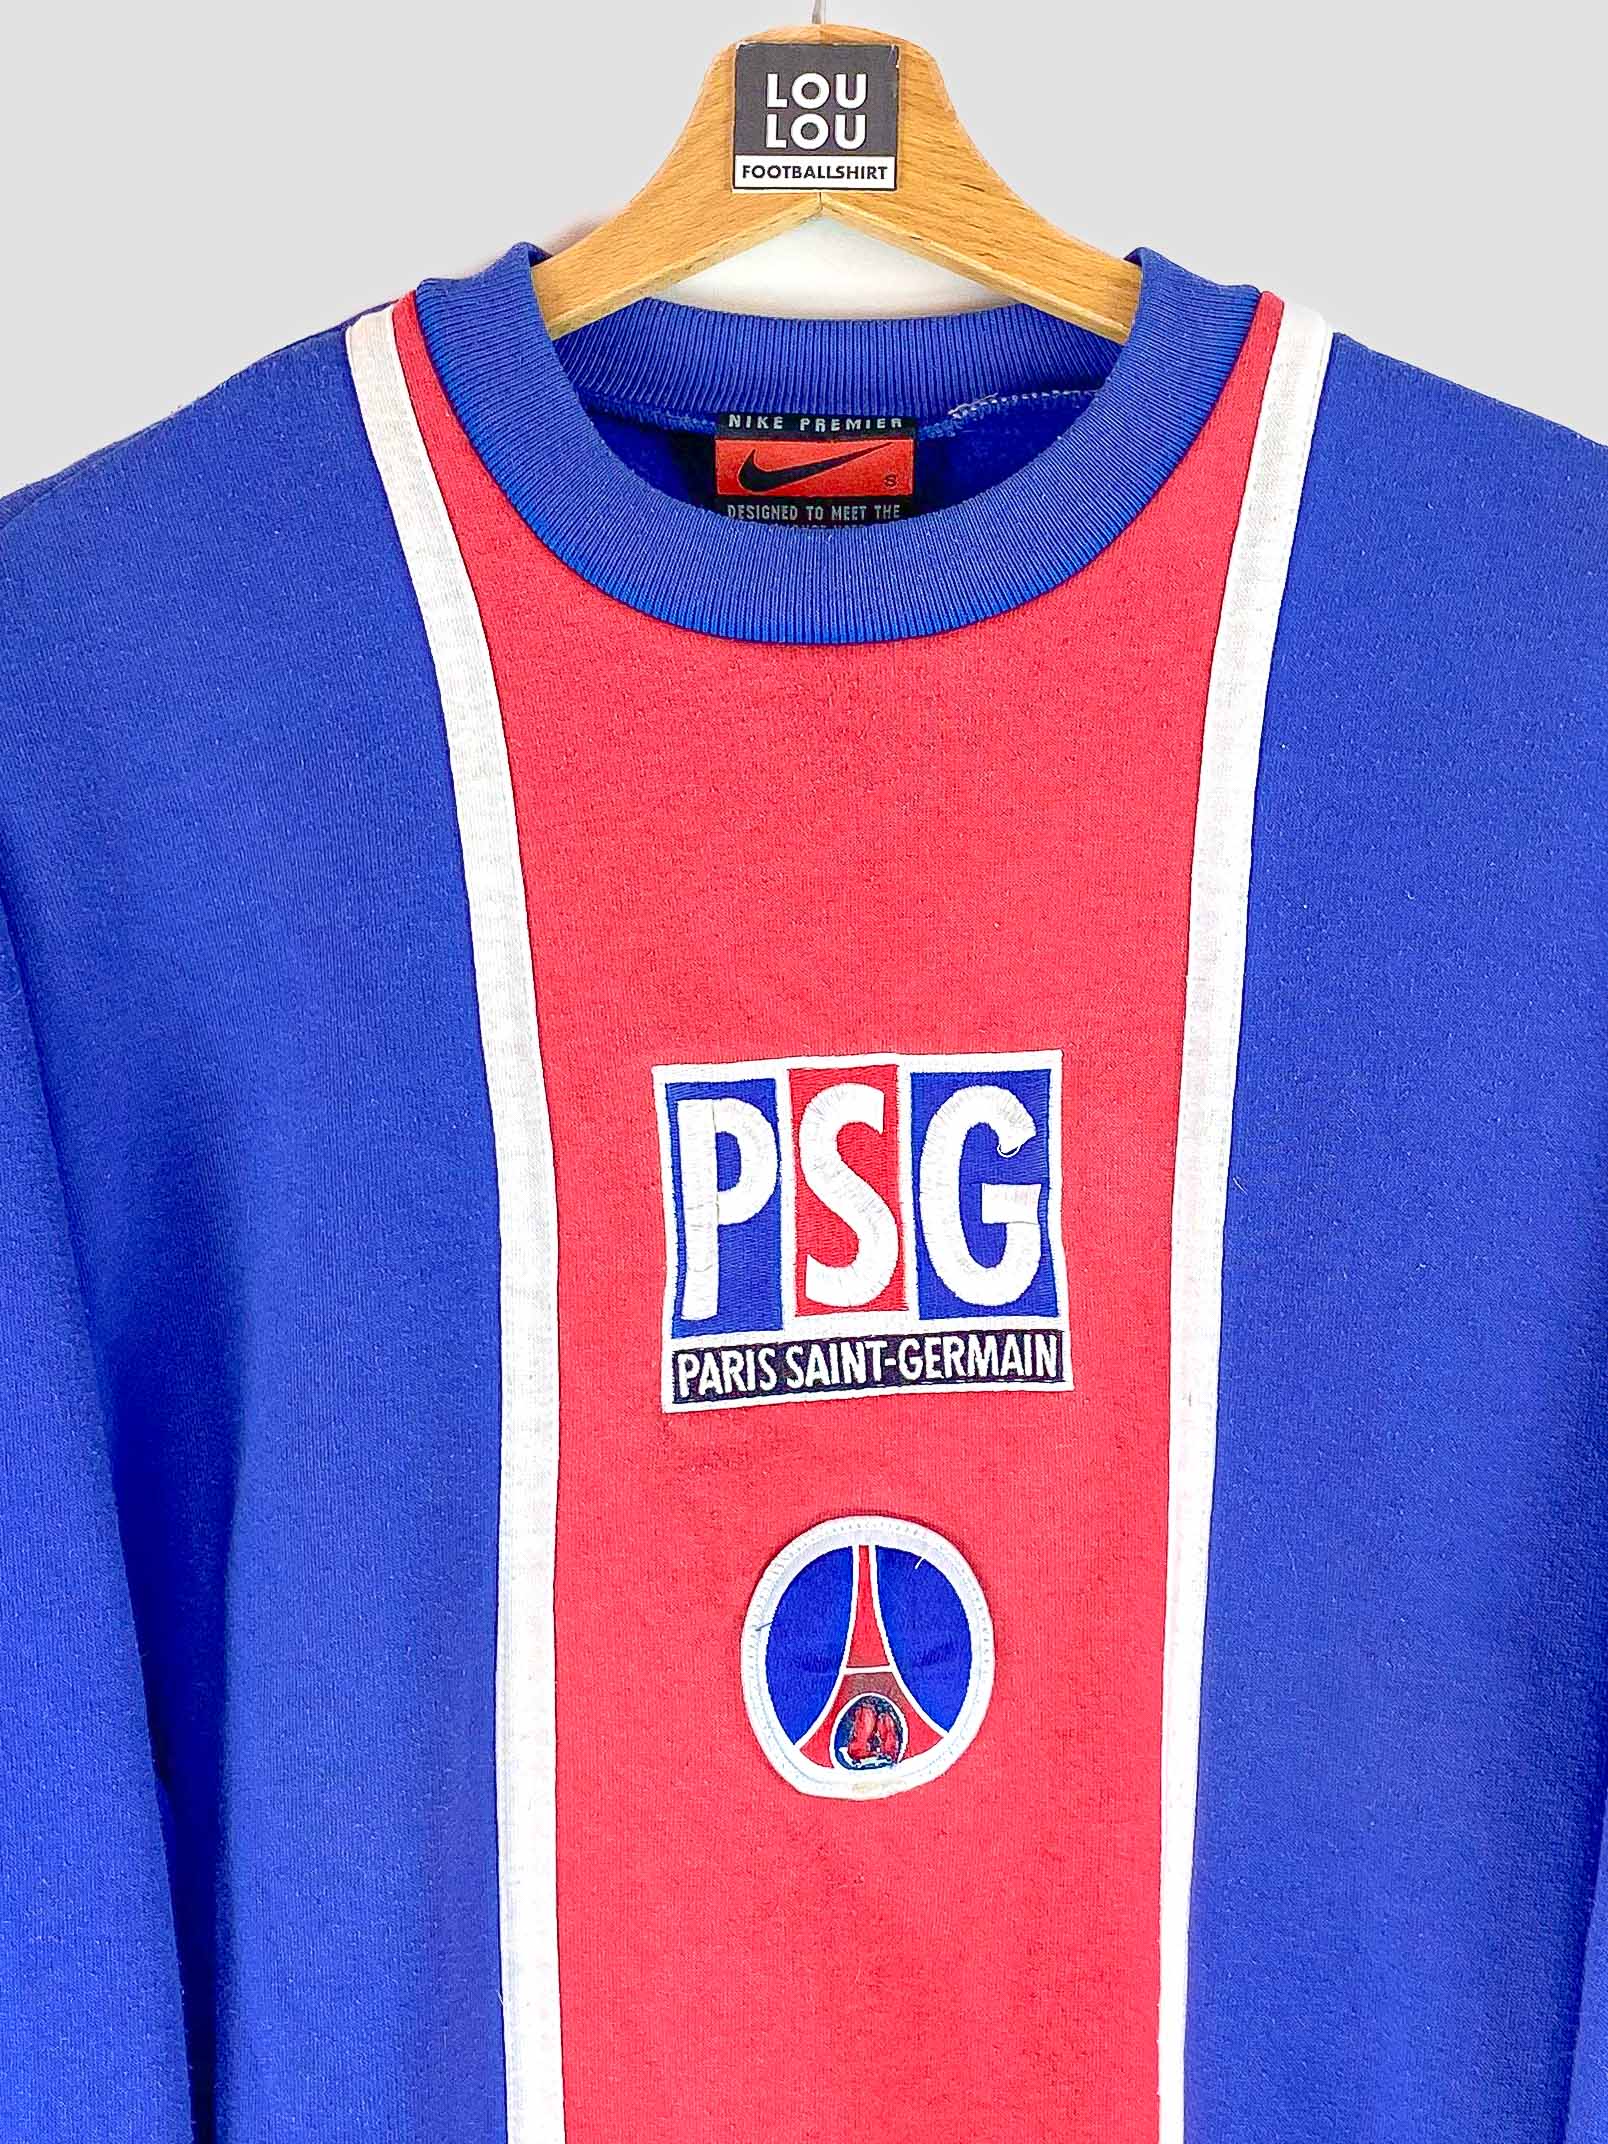 Sac à dos PSG vintage - Saison 1997/1998 - Disponible sur